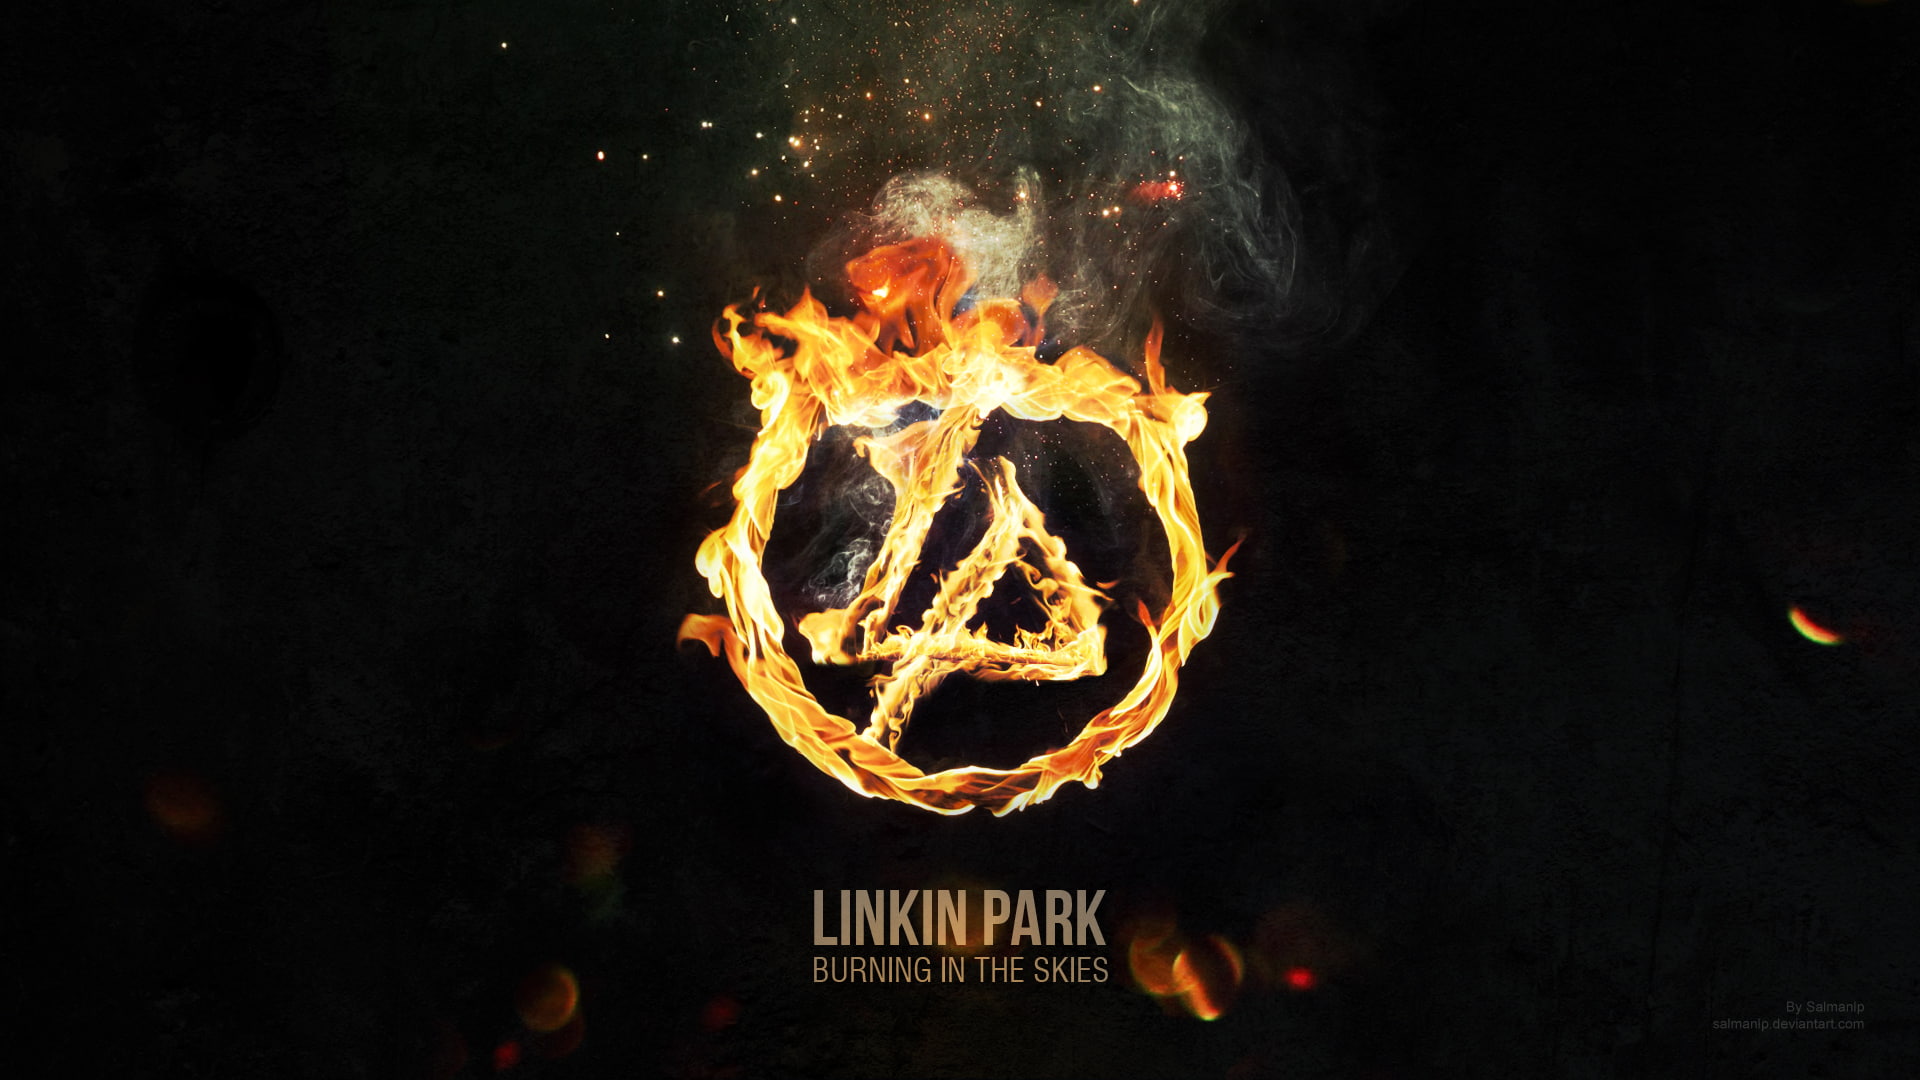 Linkin Park Burning in the Skies, night, illuminated, heat - temperature